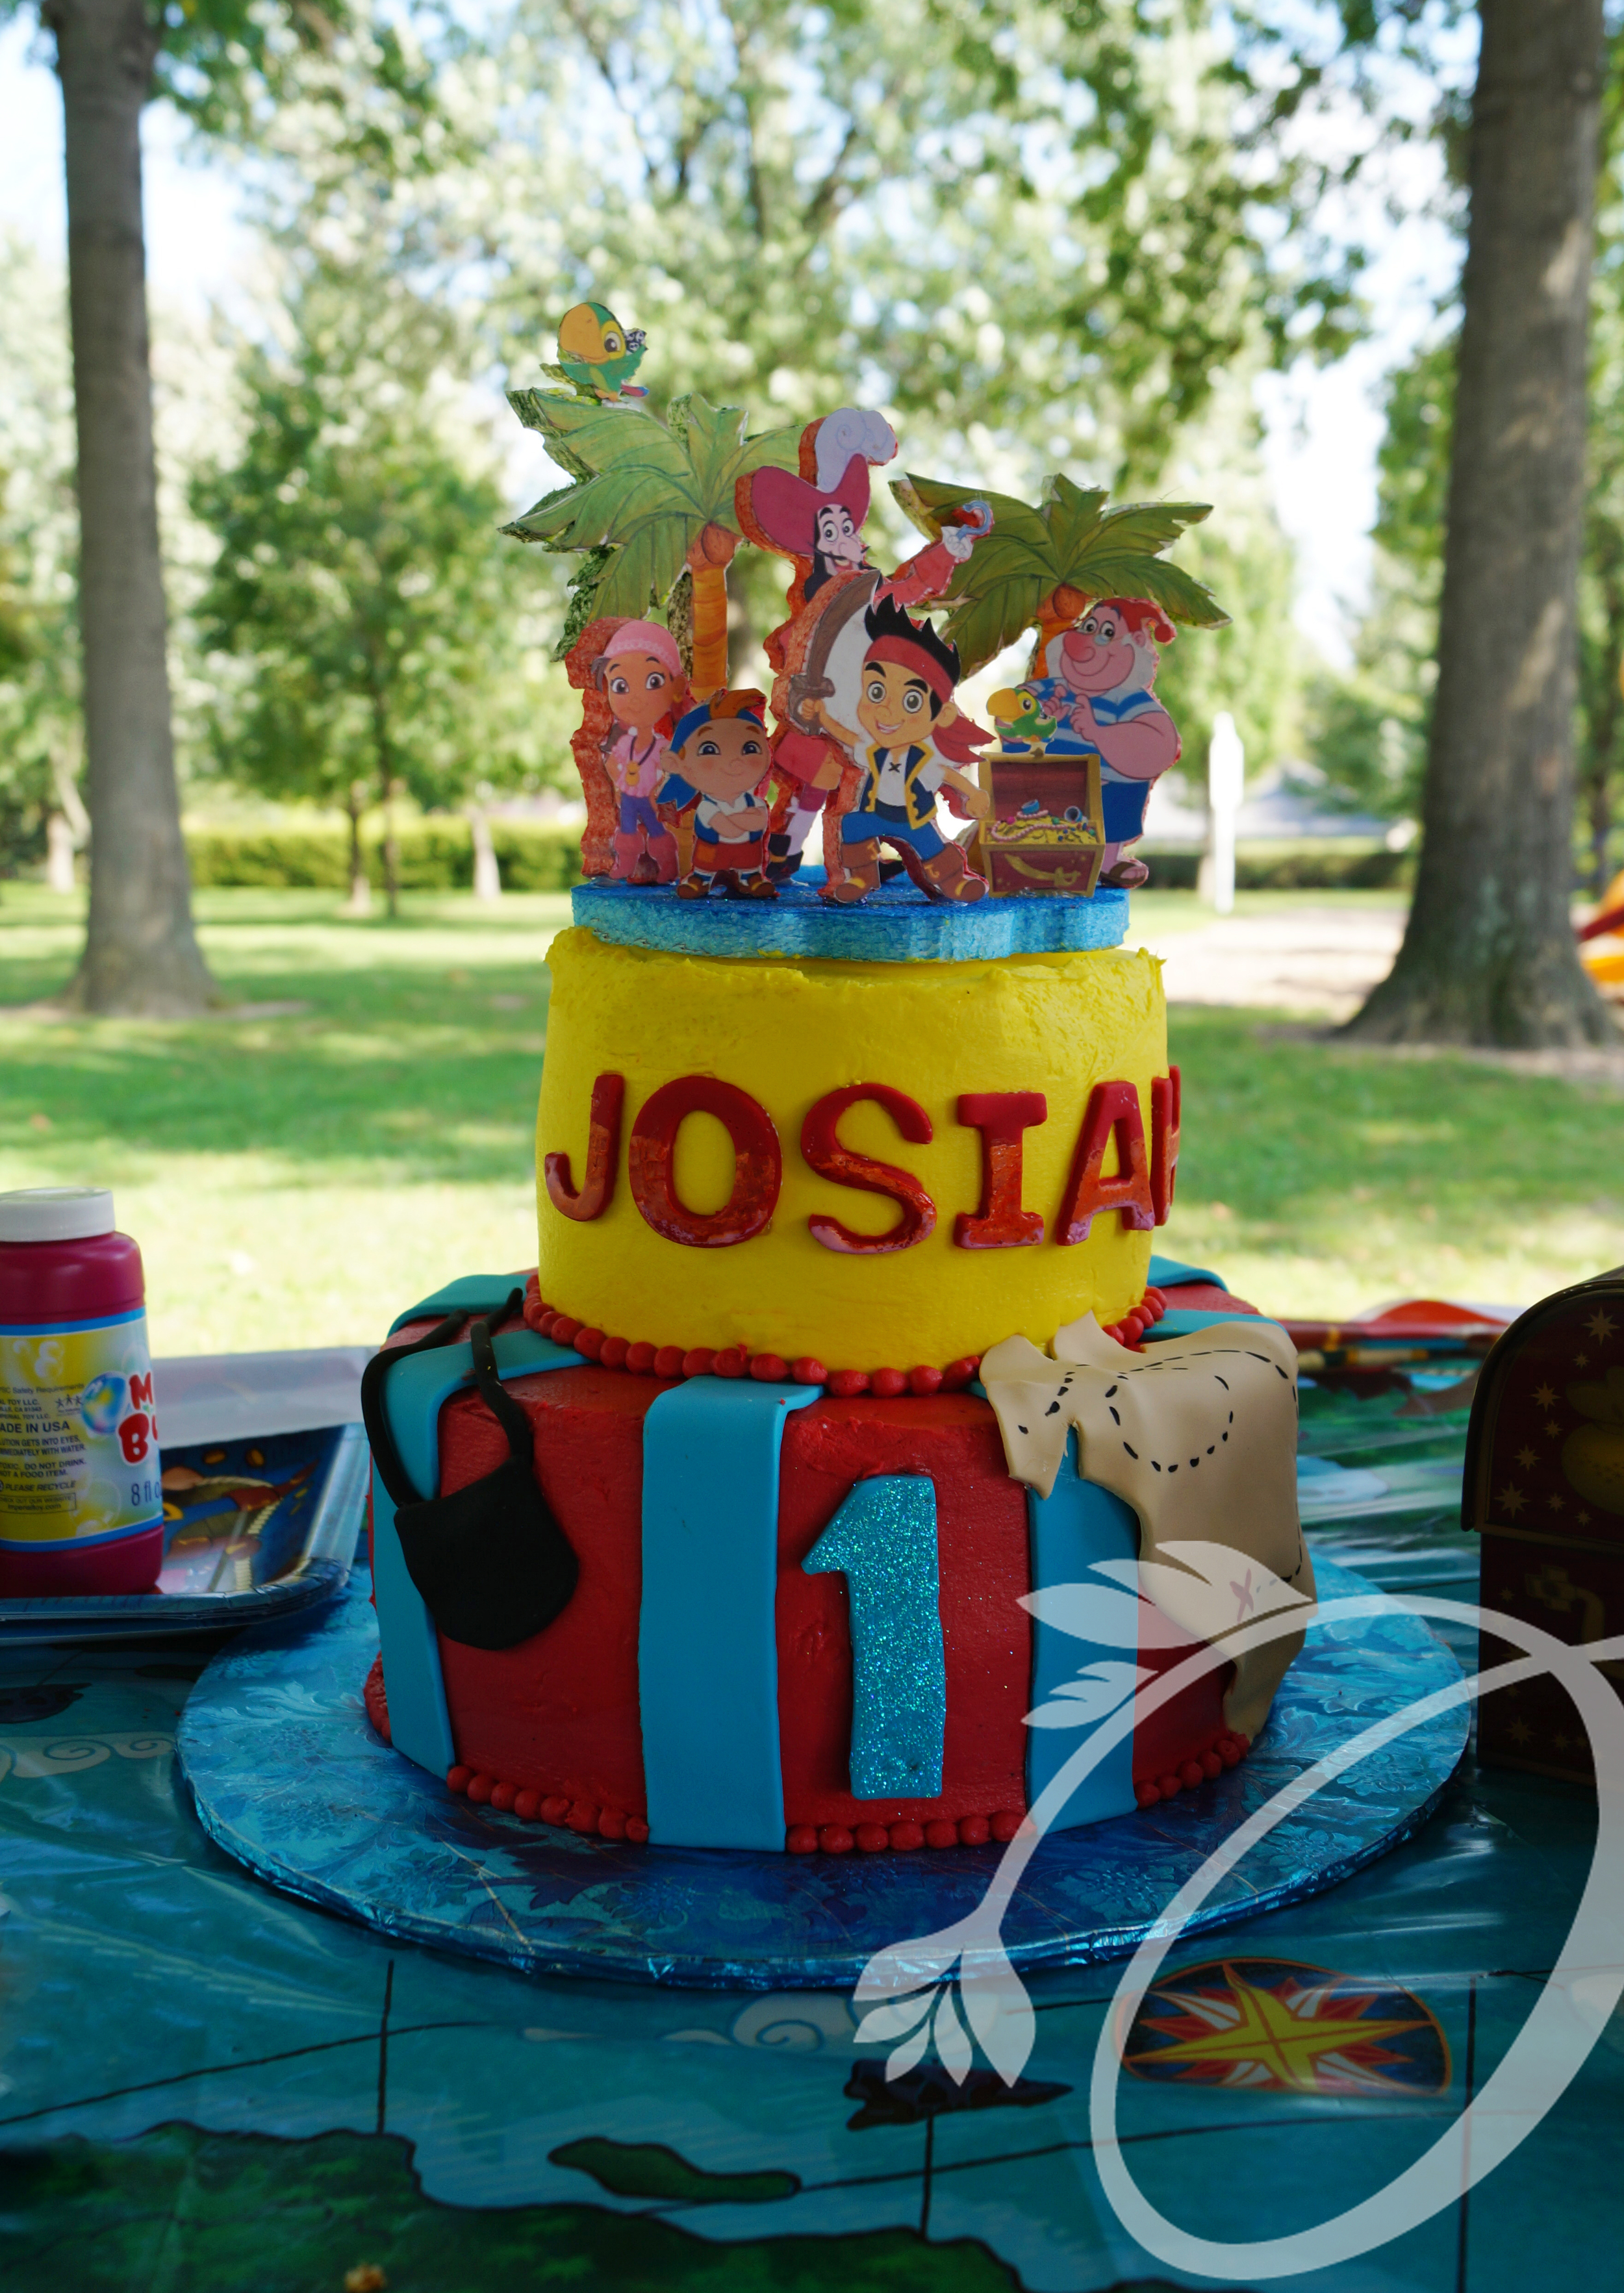 Josiahs Cake.jpg